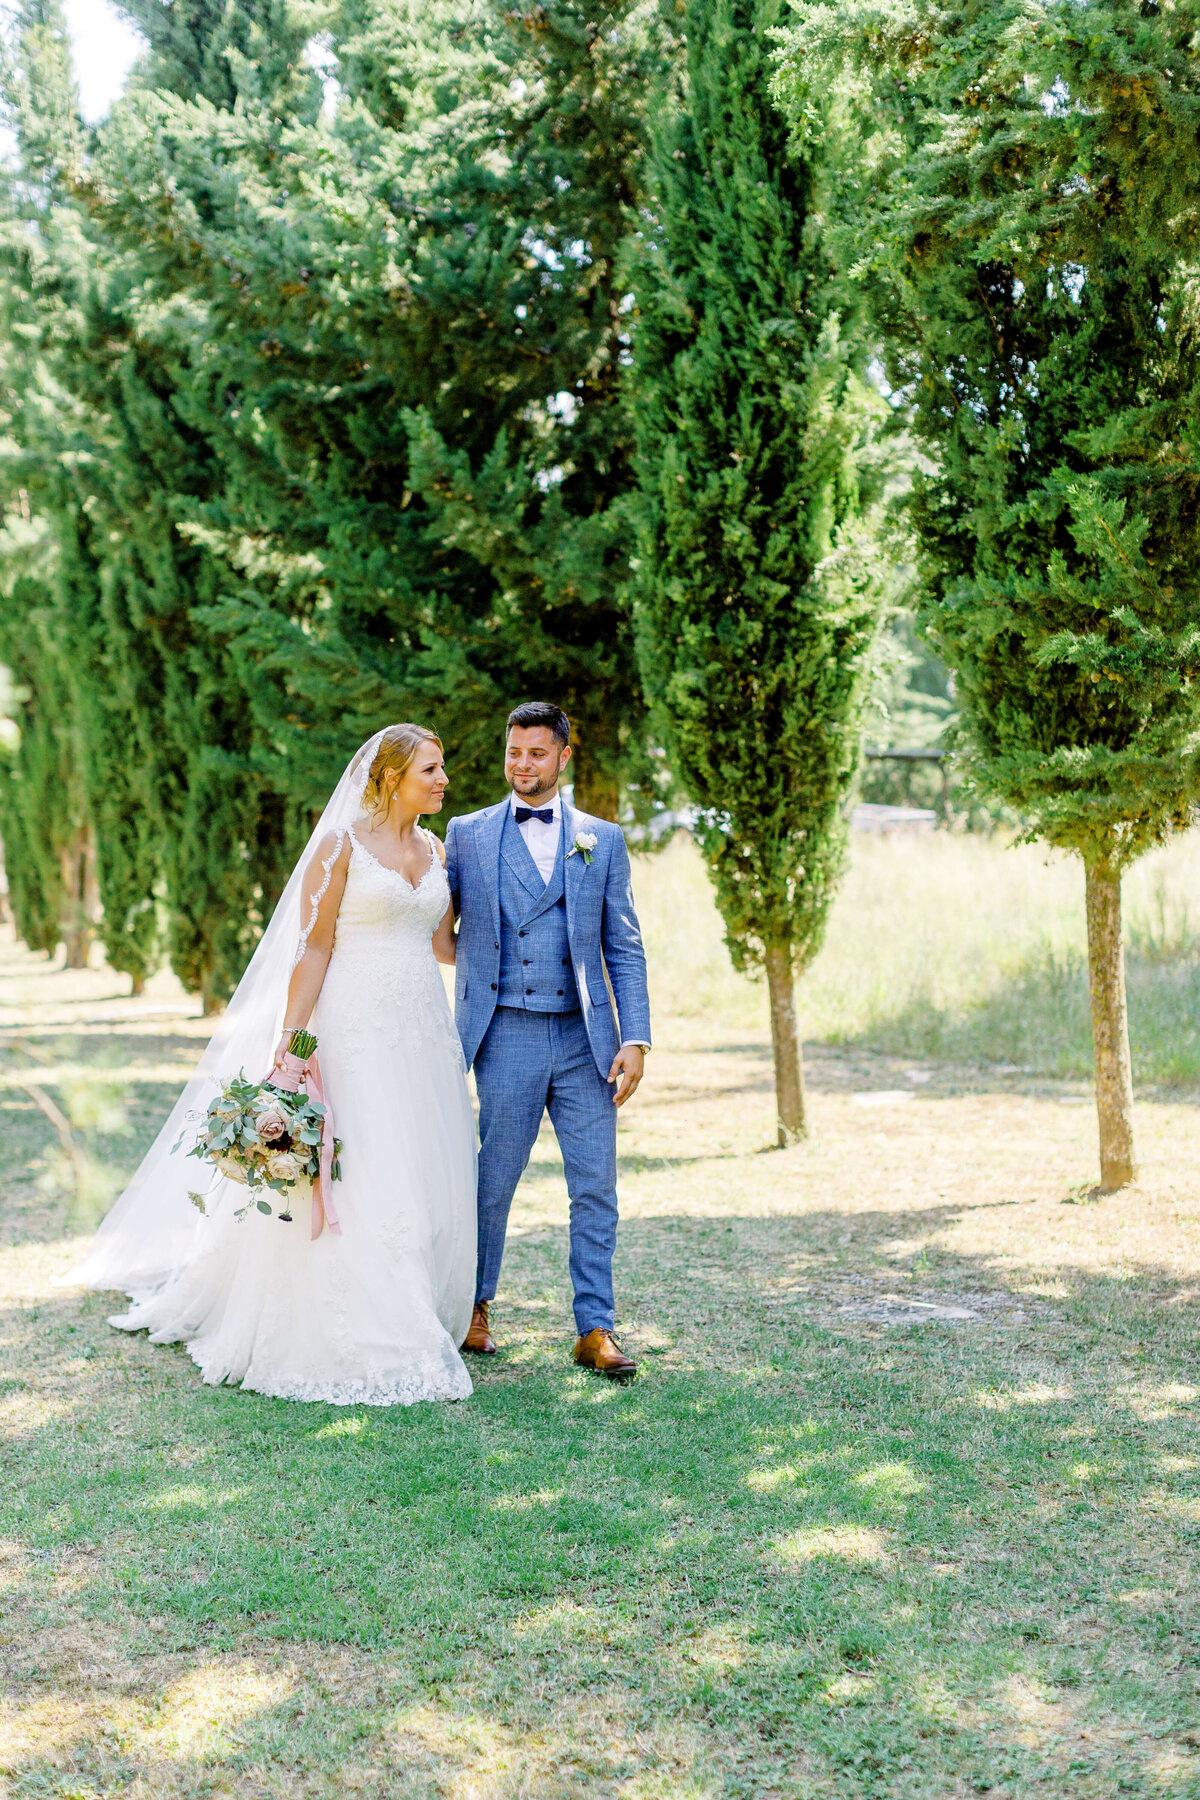 Wedding E&T - Tuscany - Italy 2019 21